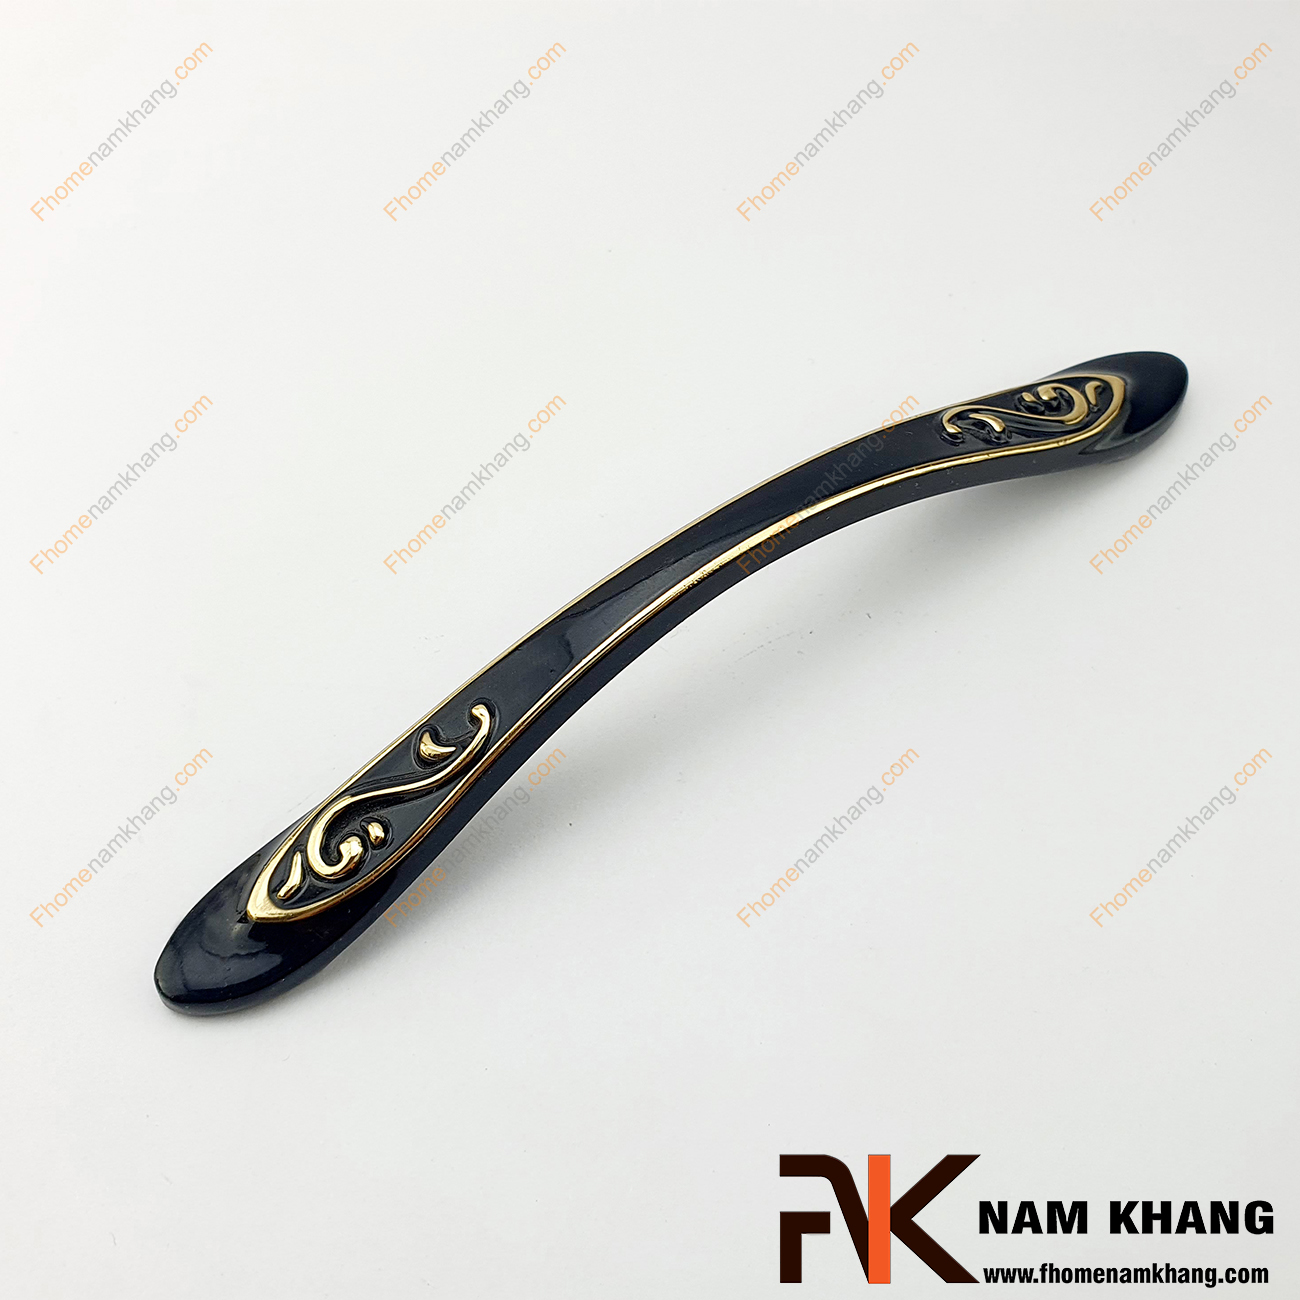 Tay nắm tủ dạng cổ điển màu đen bóng NK245-128D là một sản phẩm tay nắm tủ dạng cổ điển bao trùm bo tròn 2 đầu rất đơn giản và tinh tế.